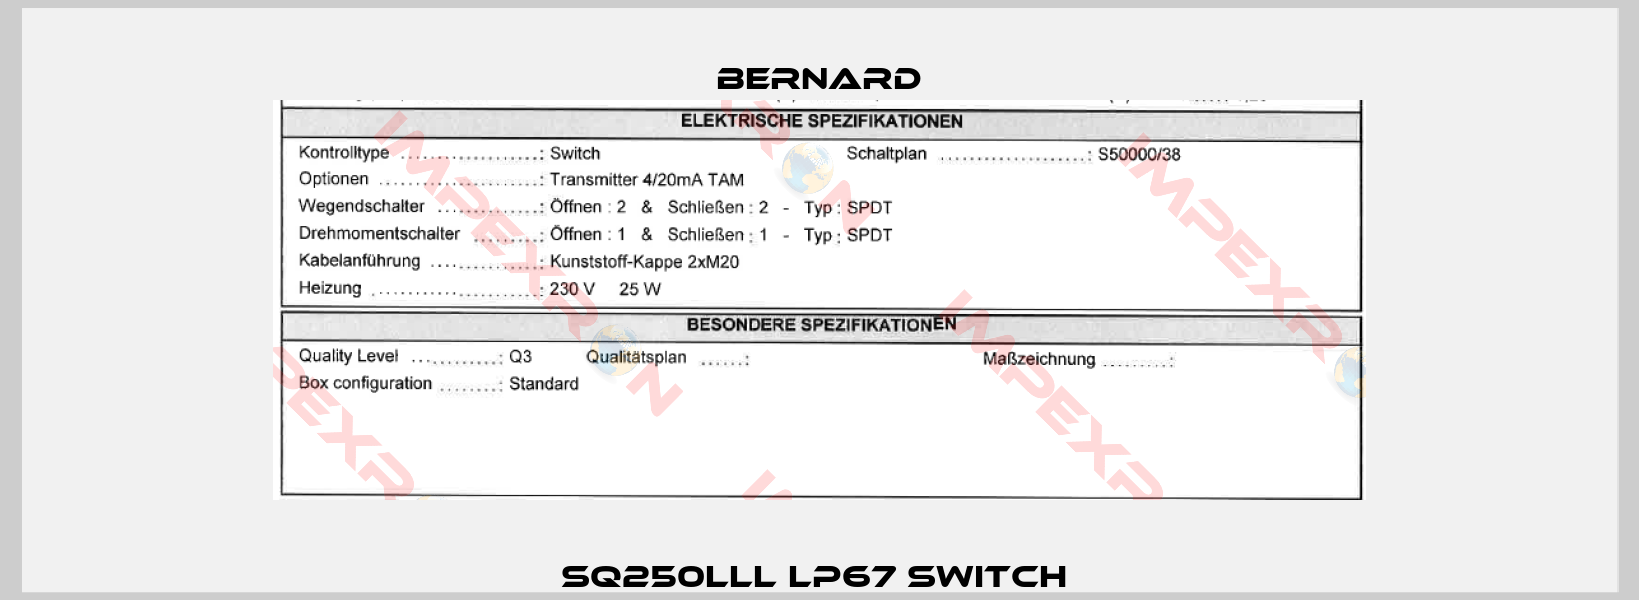 SQ250lll lP67 Switch -1